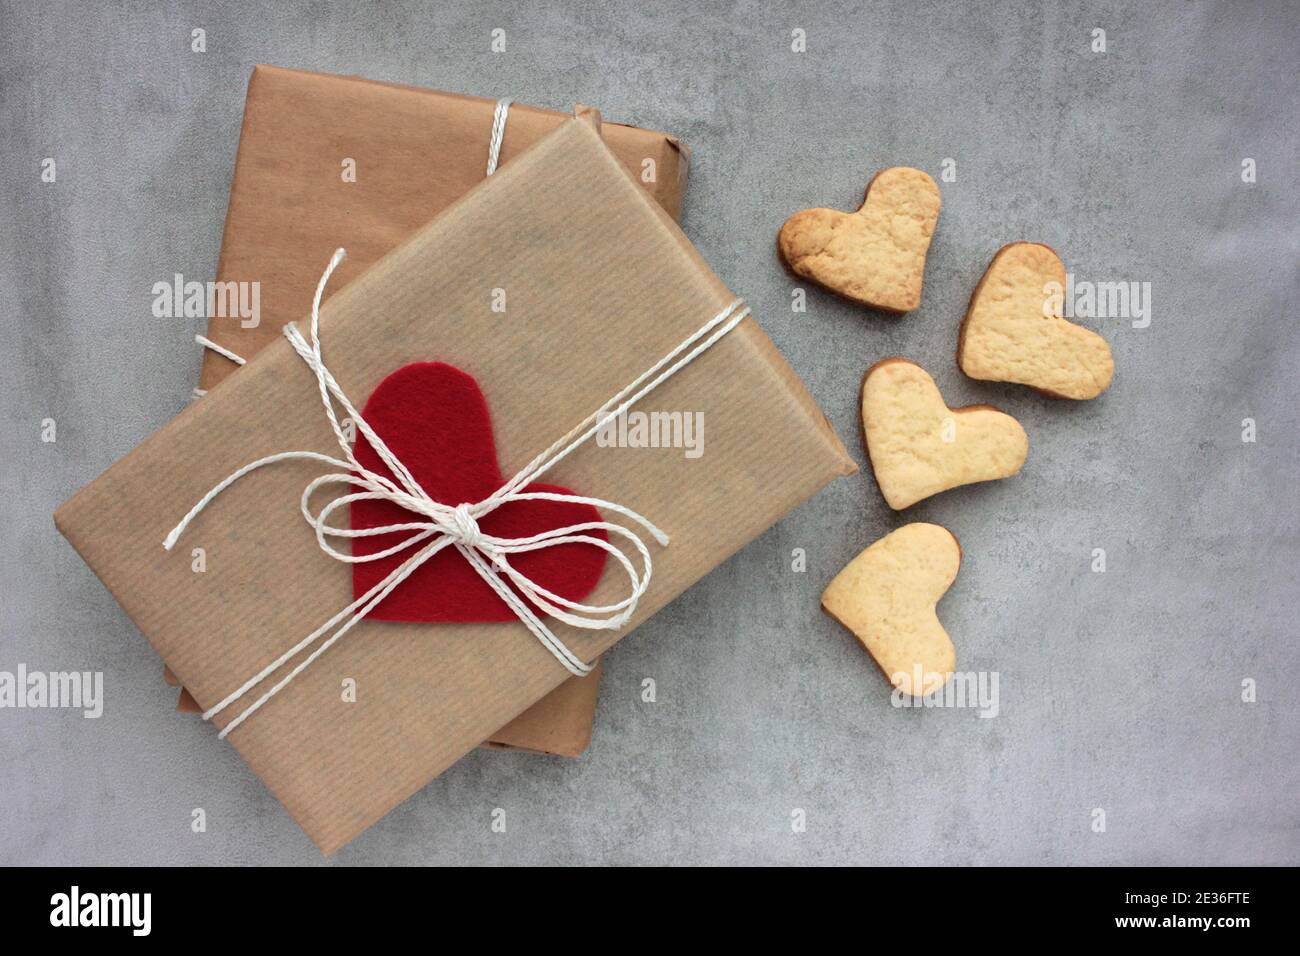 Boîte cadeau avec biscuits en forme de coeur et de coeur sur fond de béton  gris.Emballage de cadeau en papier kraft et décoré de coeur en feutre.Vue de  dessus Photo Stock -